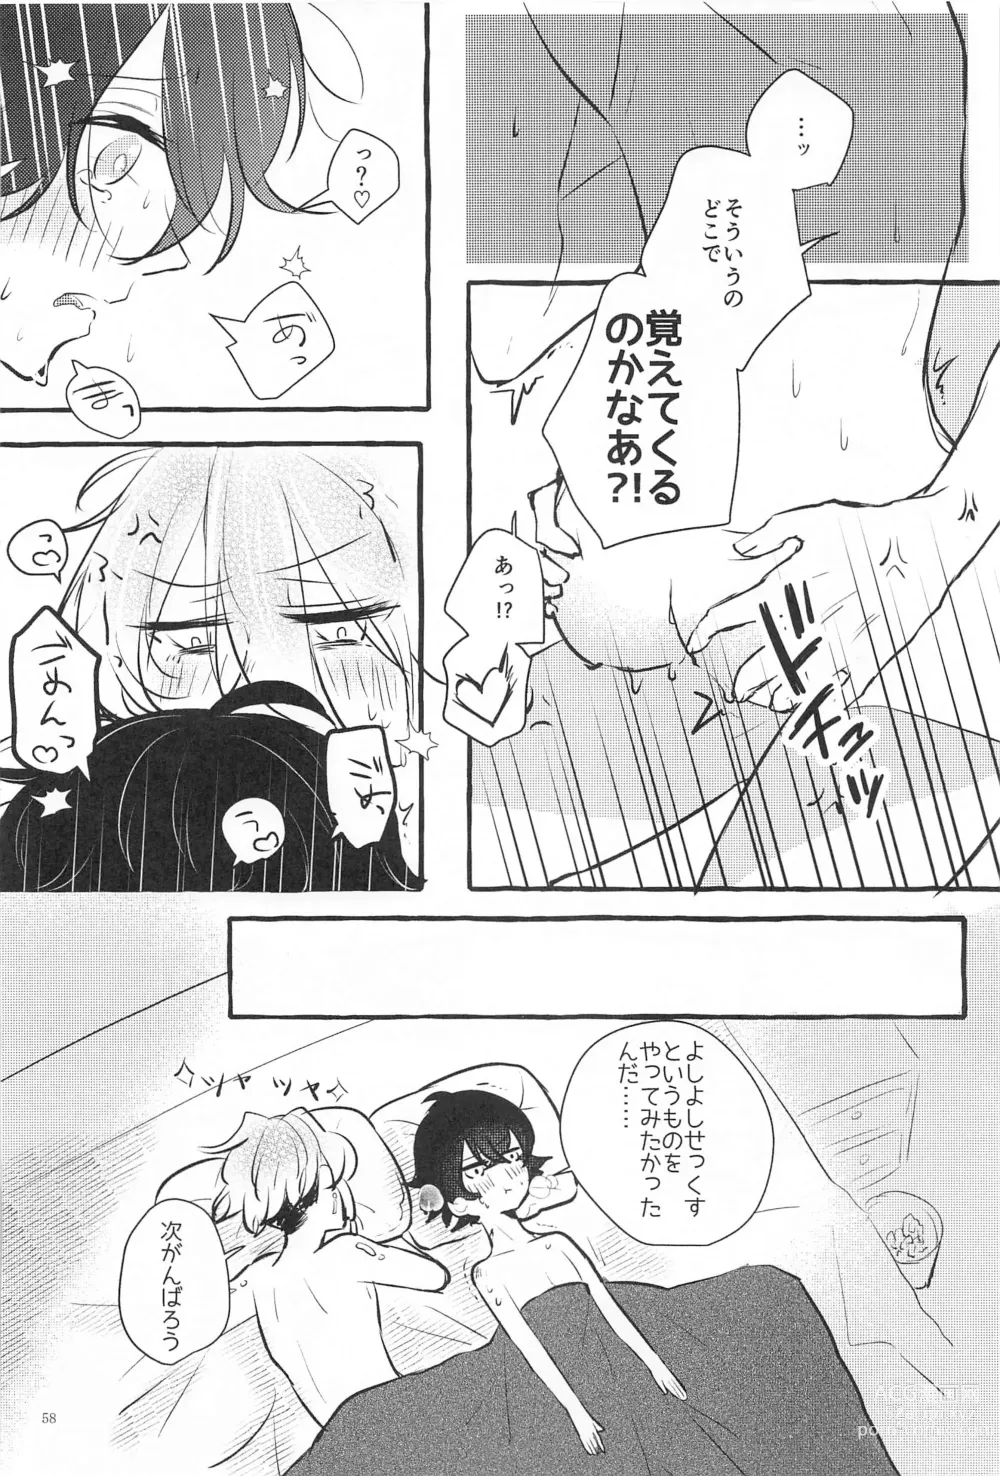 Page 57 of doujinshi Kanete kara no Setsubou de